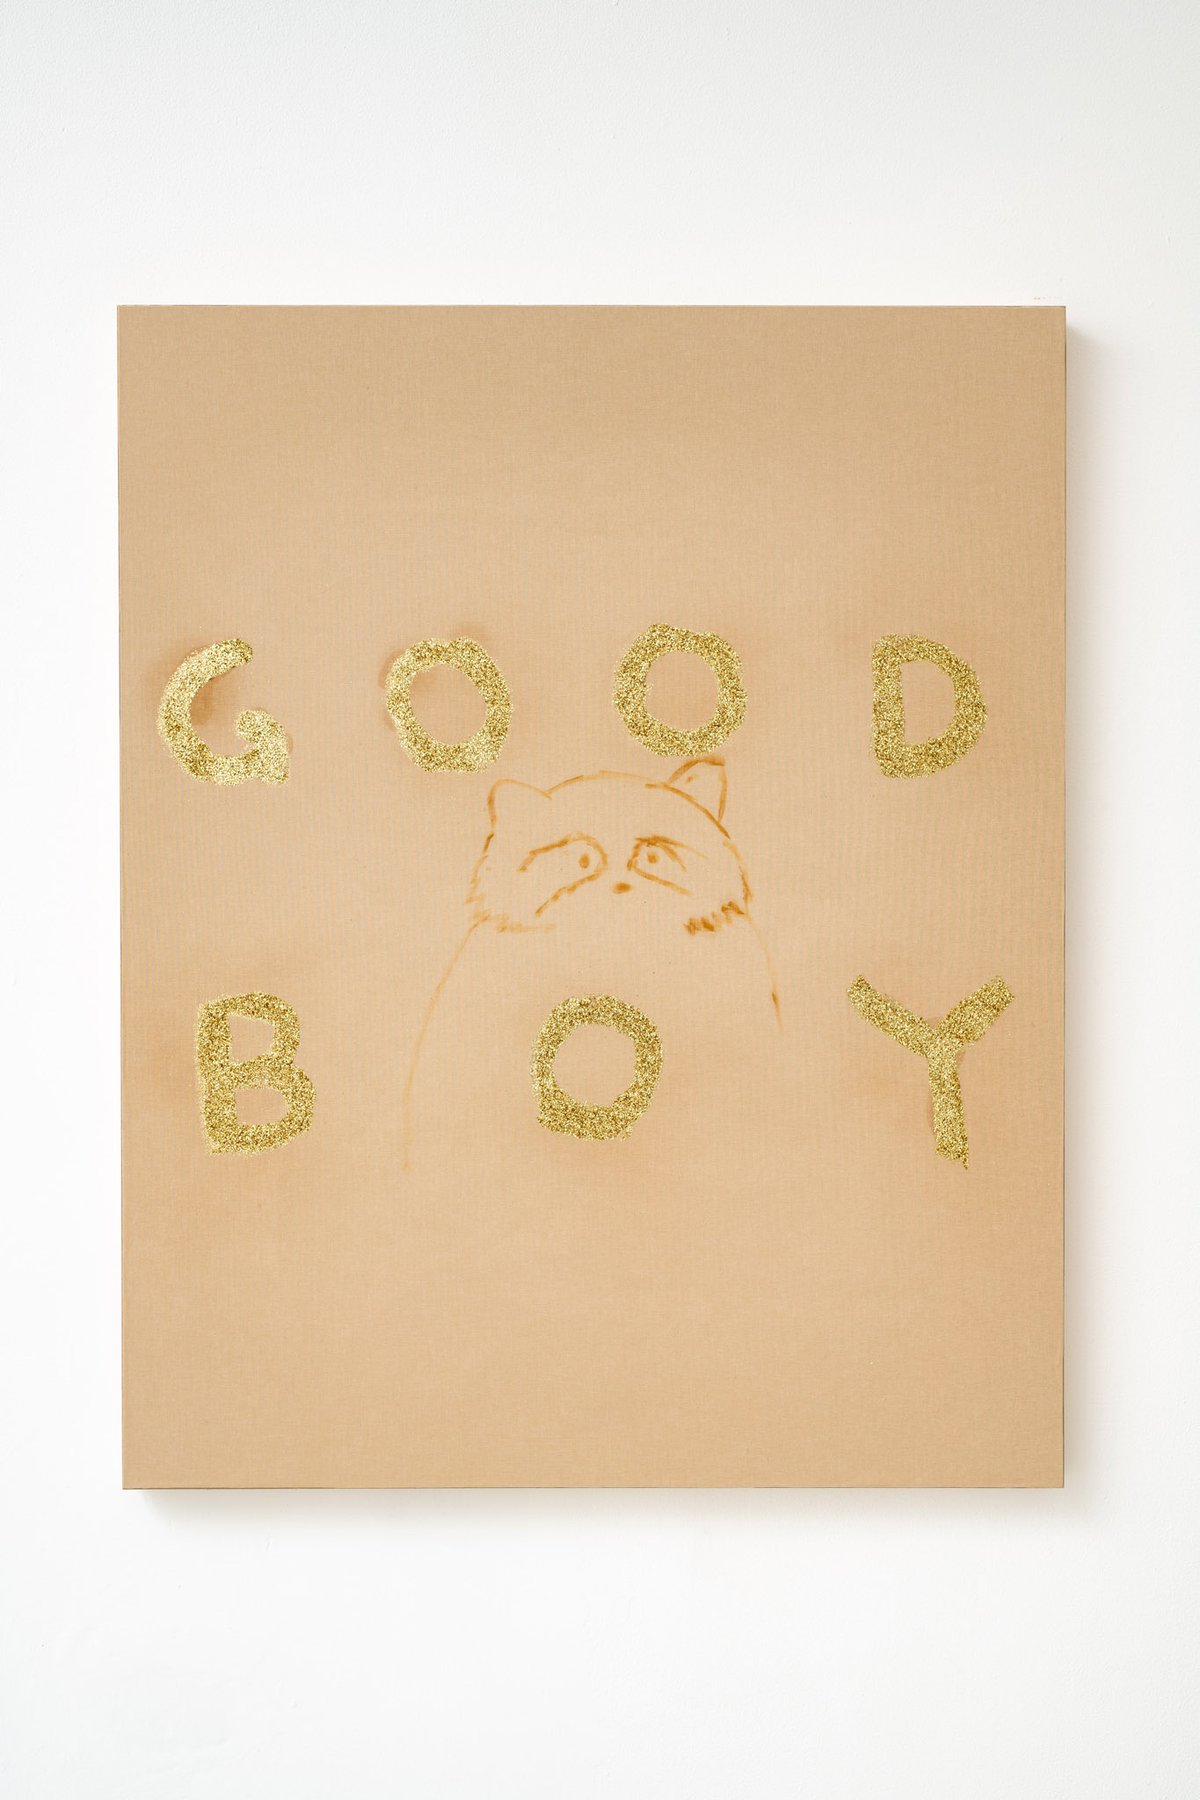 Philipp TimischlGOOD BOY (Brown, Ochre, Gold), 2019Canvas on wooden, board, oil, glitter100 x 80 x 5 cm